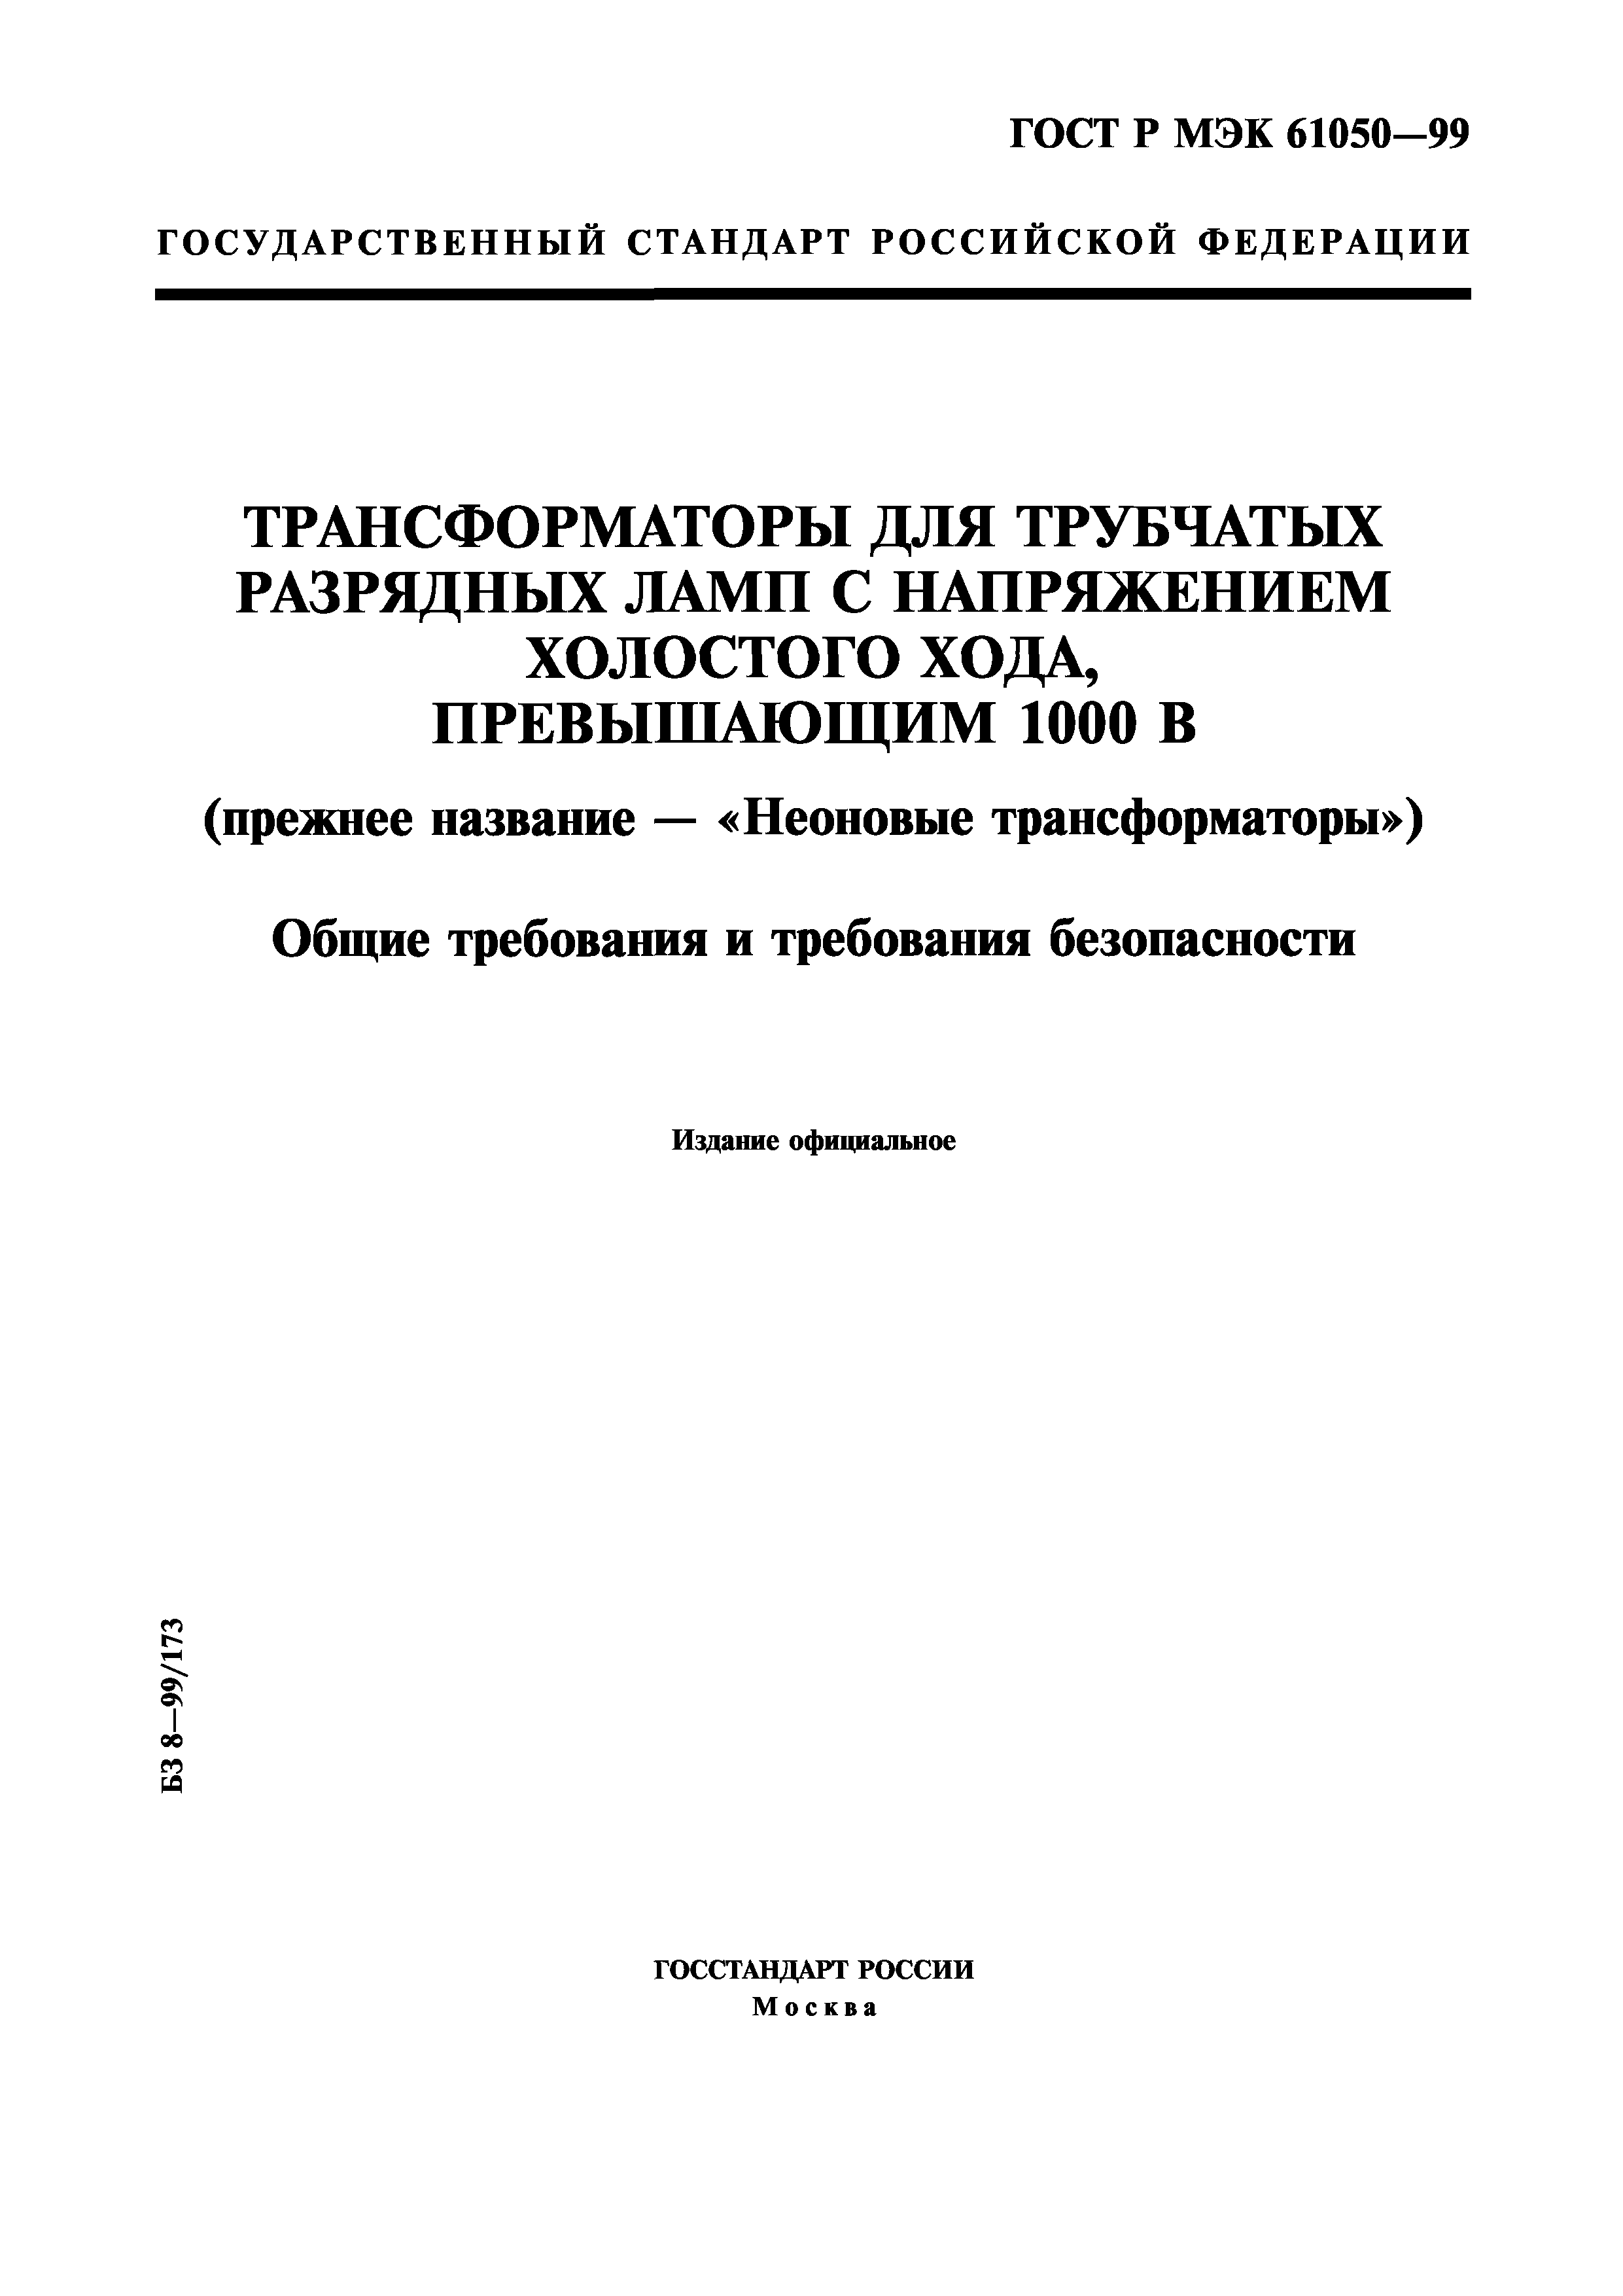 ГОСТ Р МЭК 61050-99